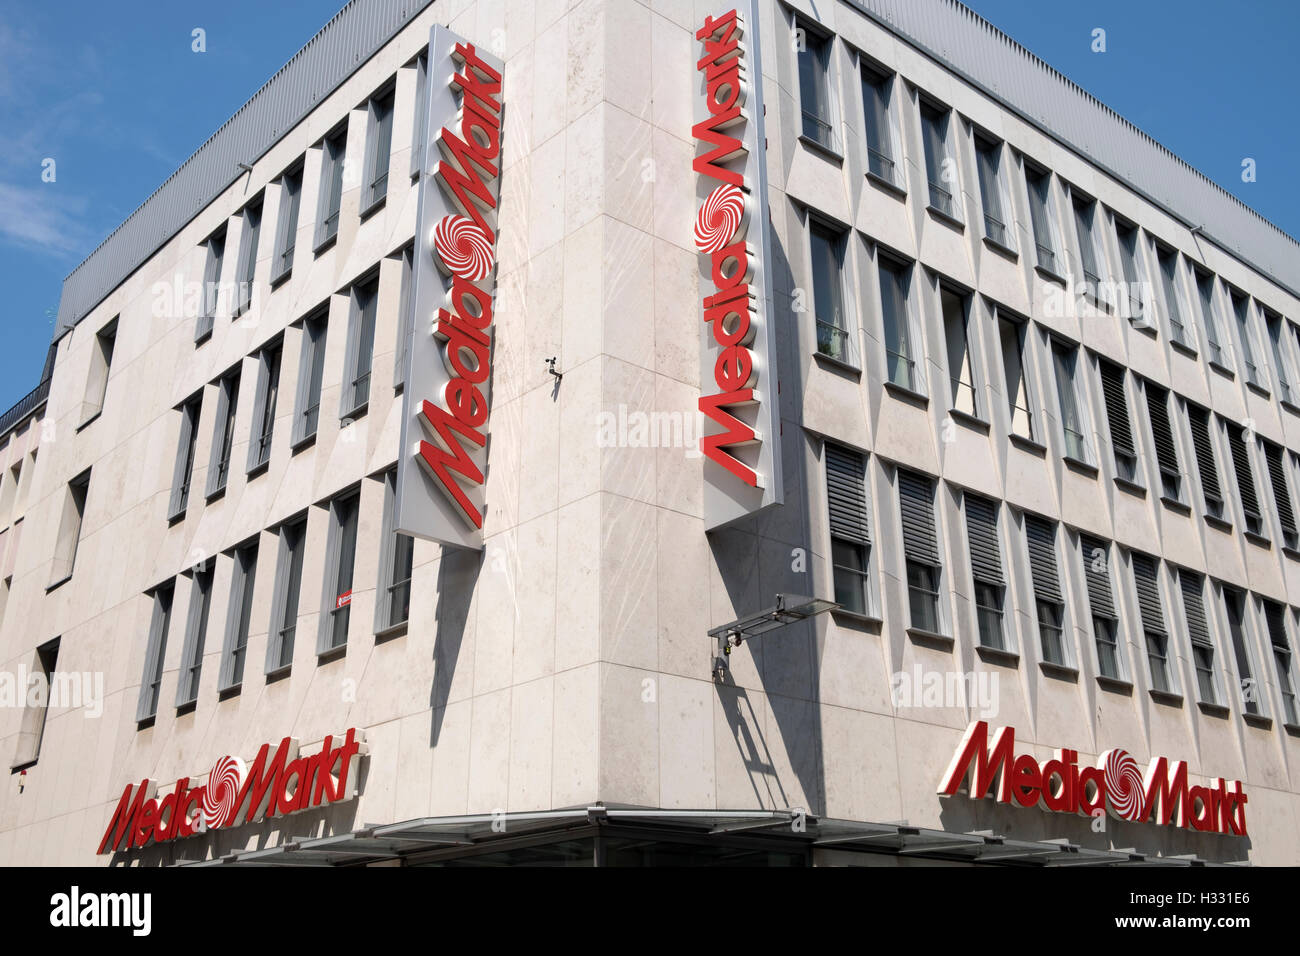 MediaMarkt department store, Cologne, Allemagne. Banque D'Images